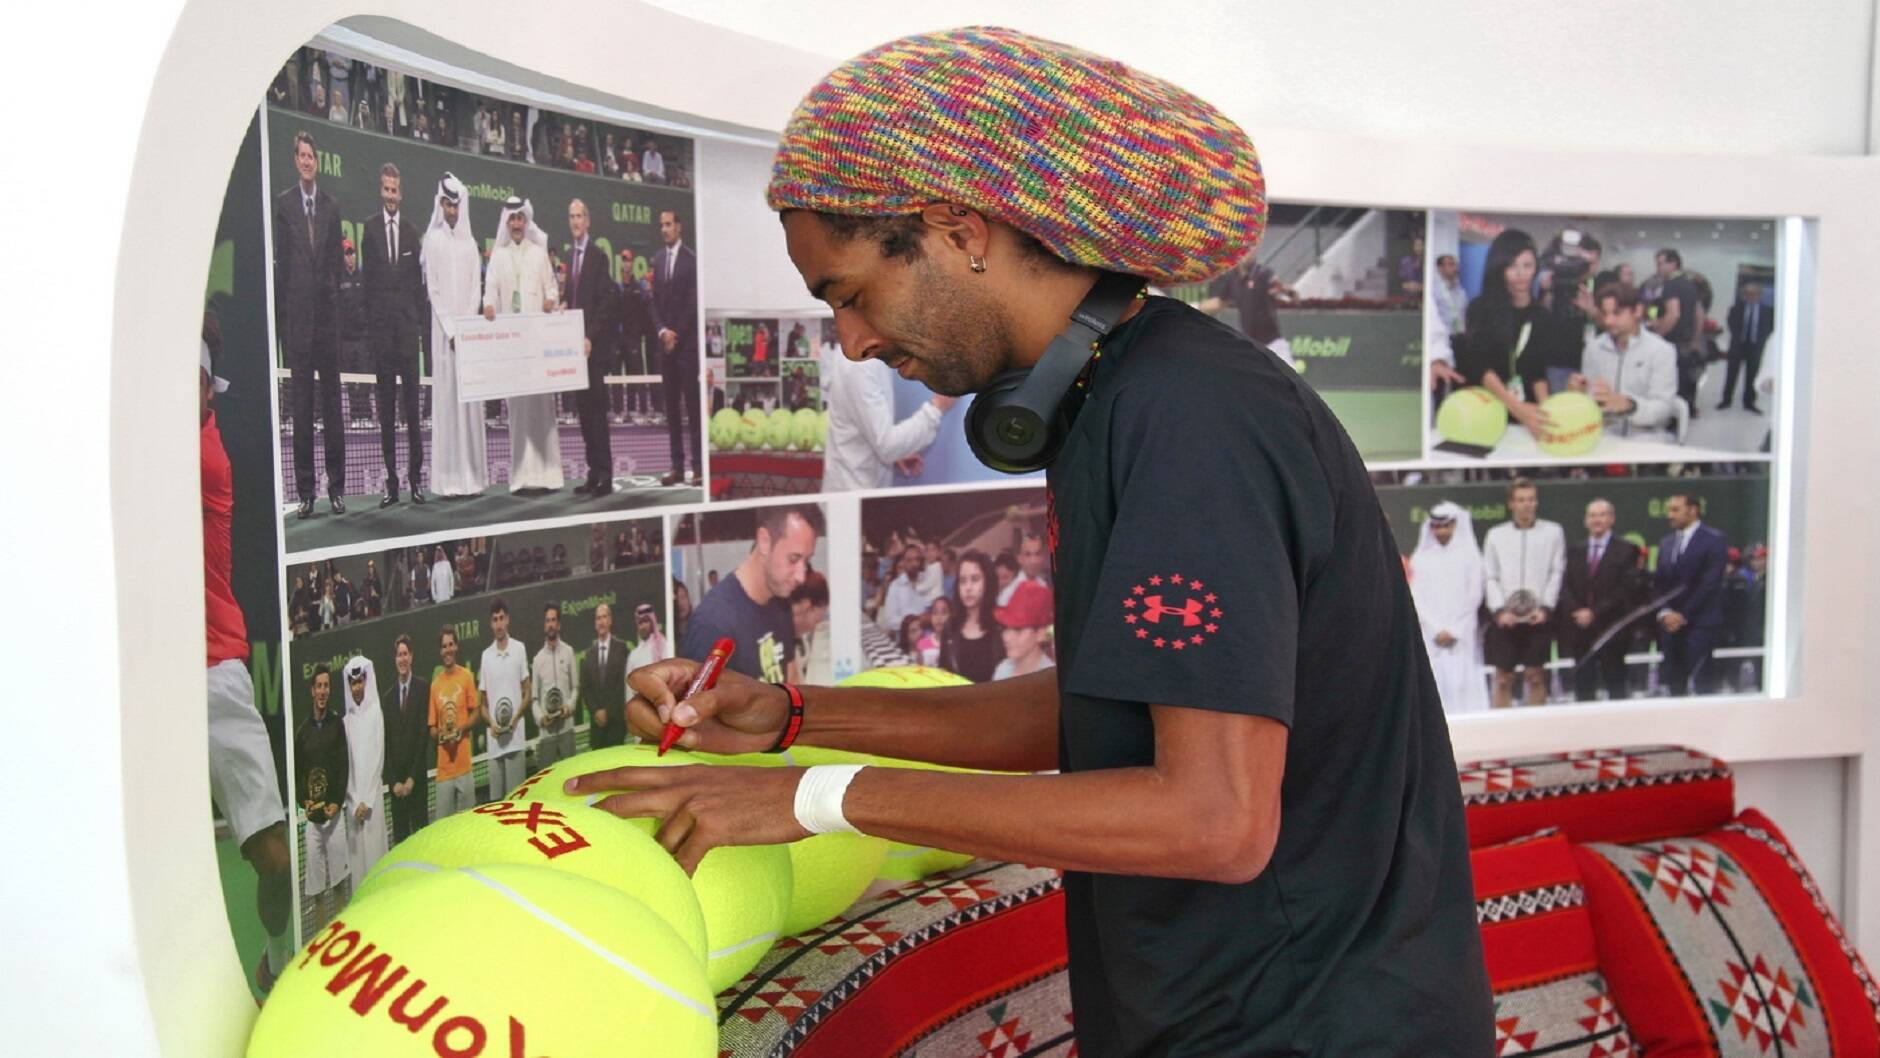 Tennis star Dustin Brown signs souvenir tennis balls for his fans at the ExxonMobil Qatar stand.